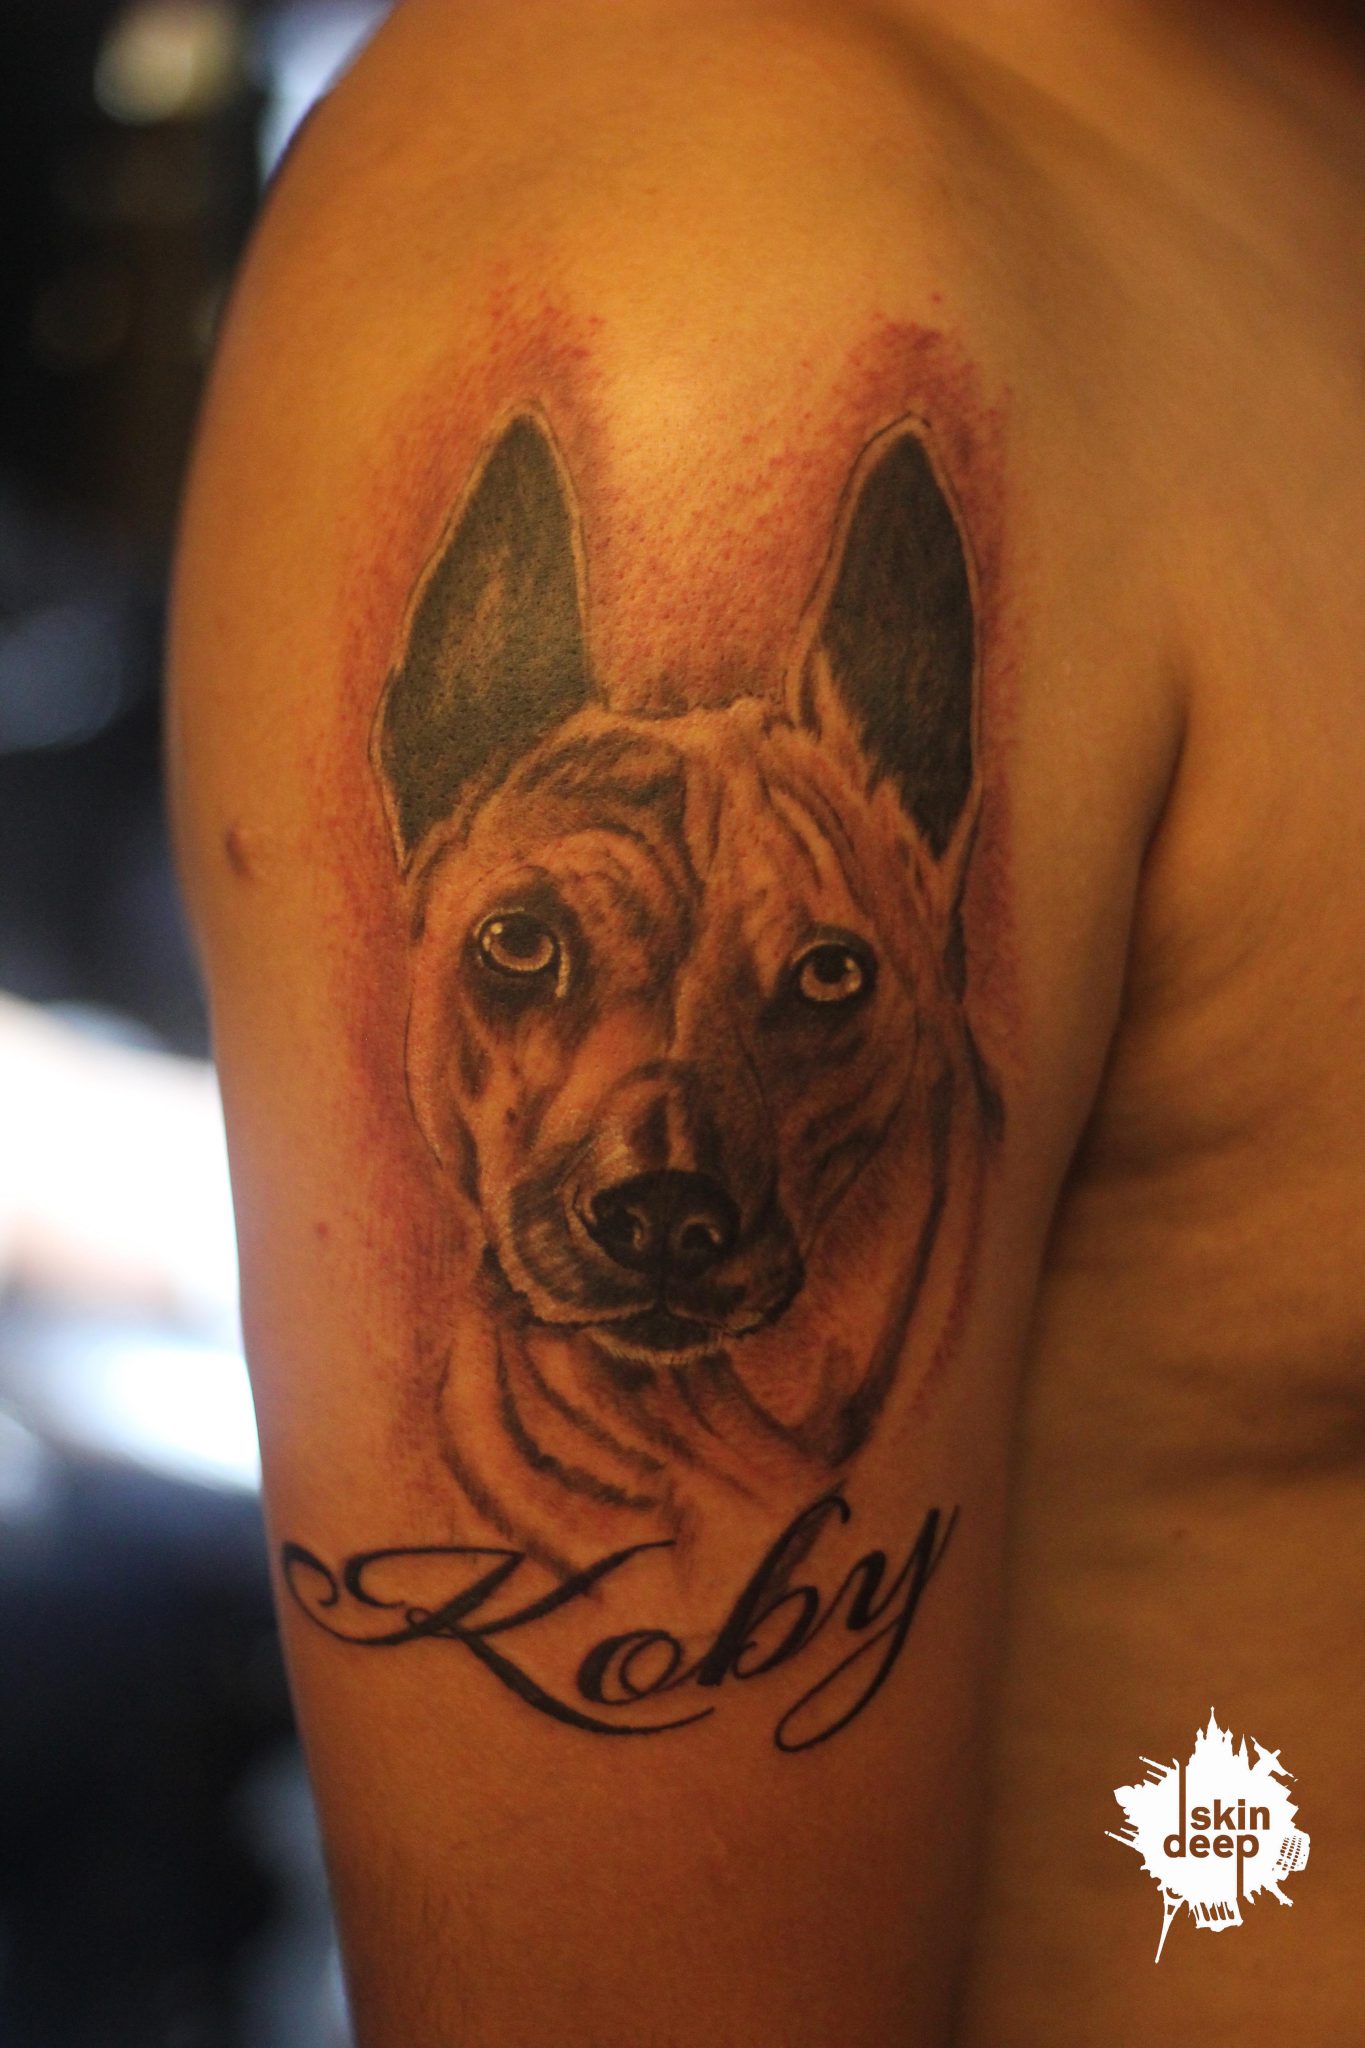 Grey Scale – Dog (Koby) Tattoo